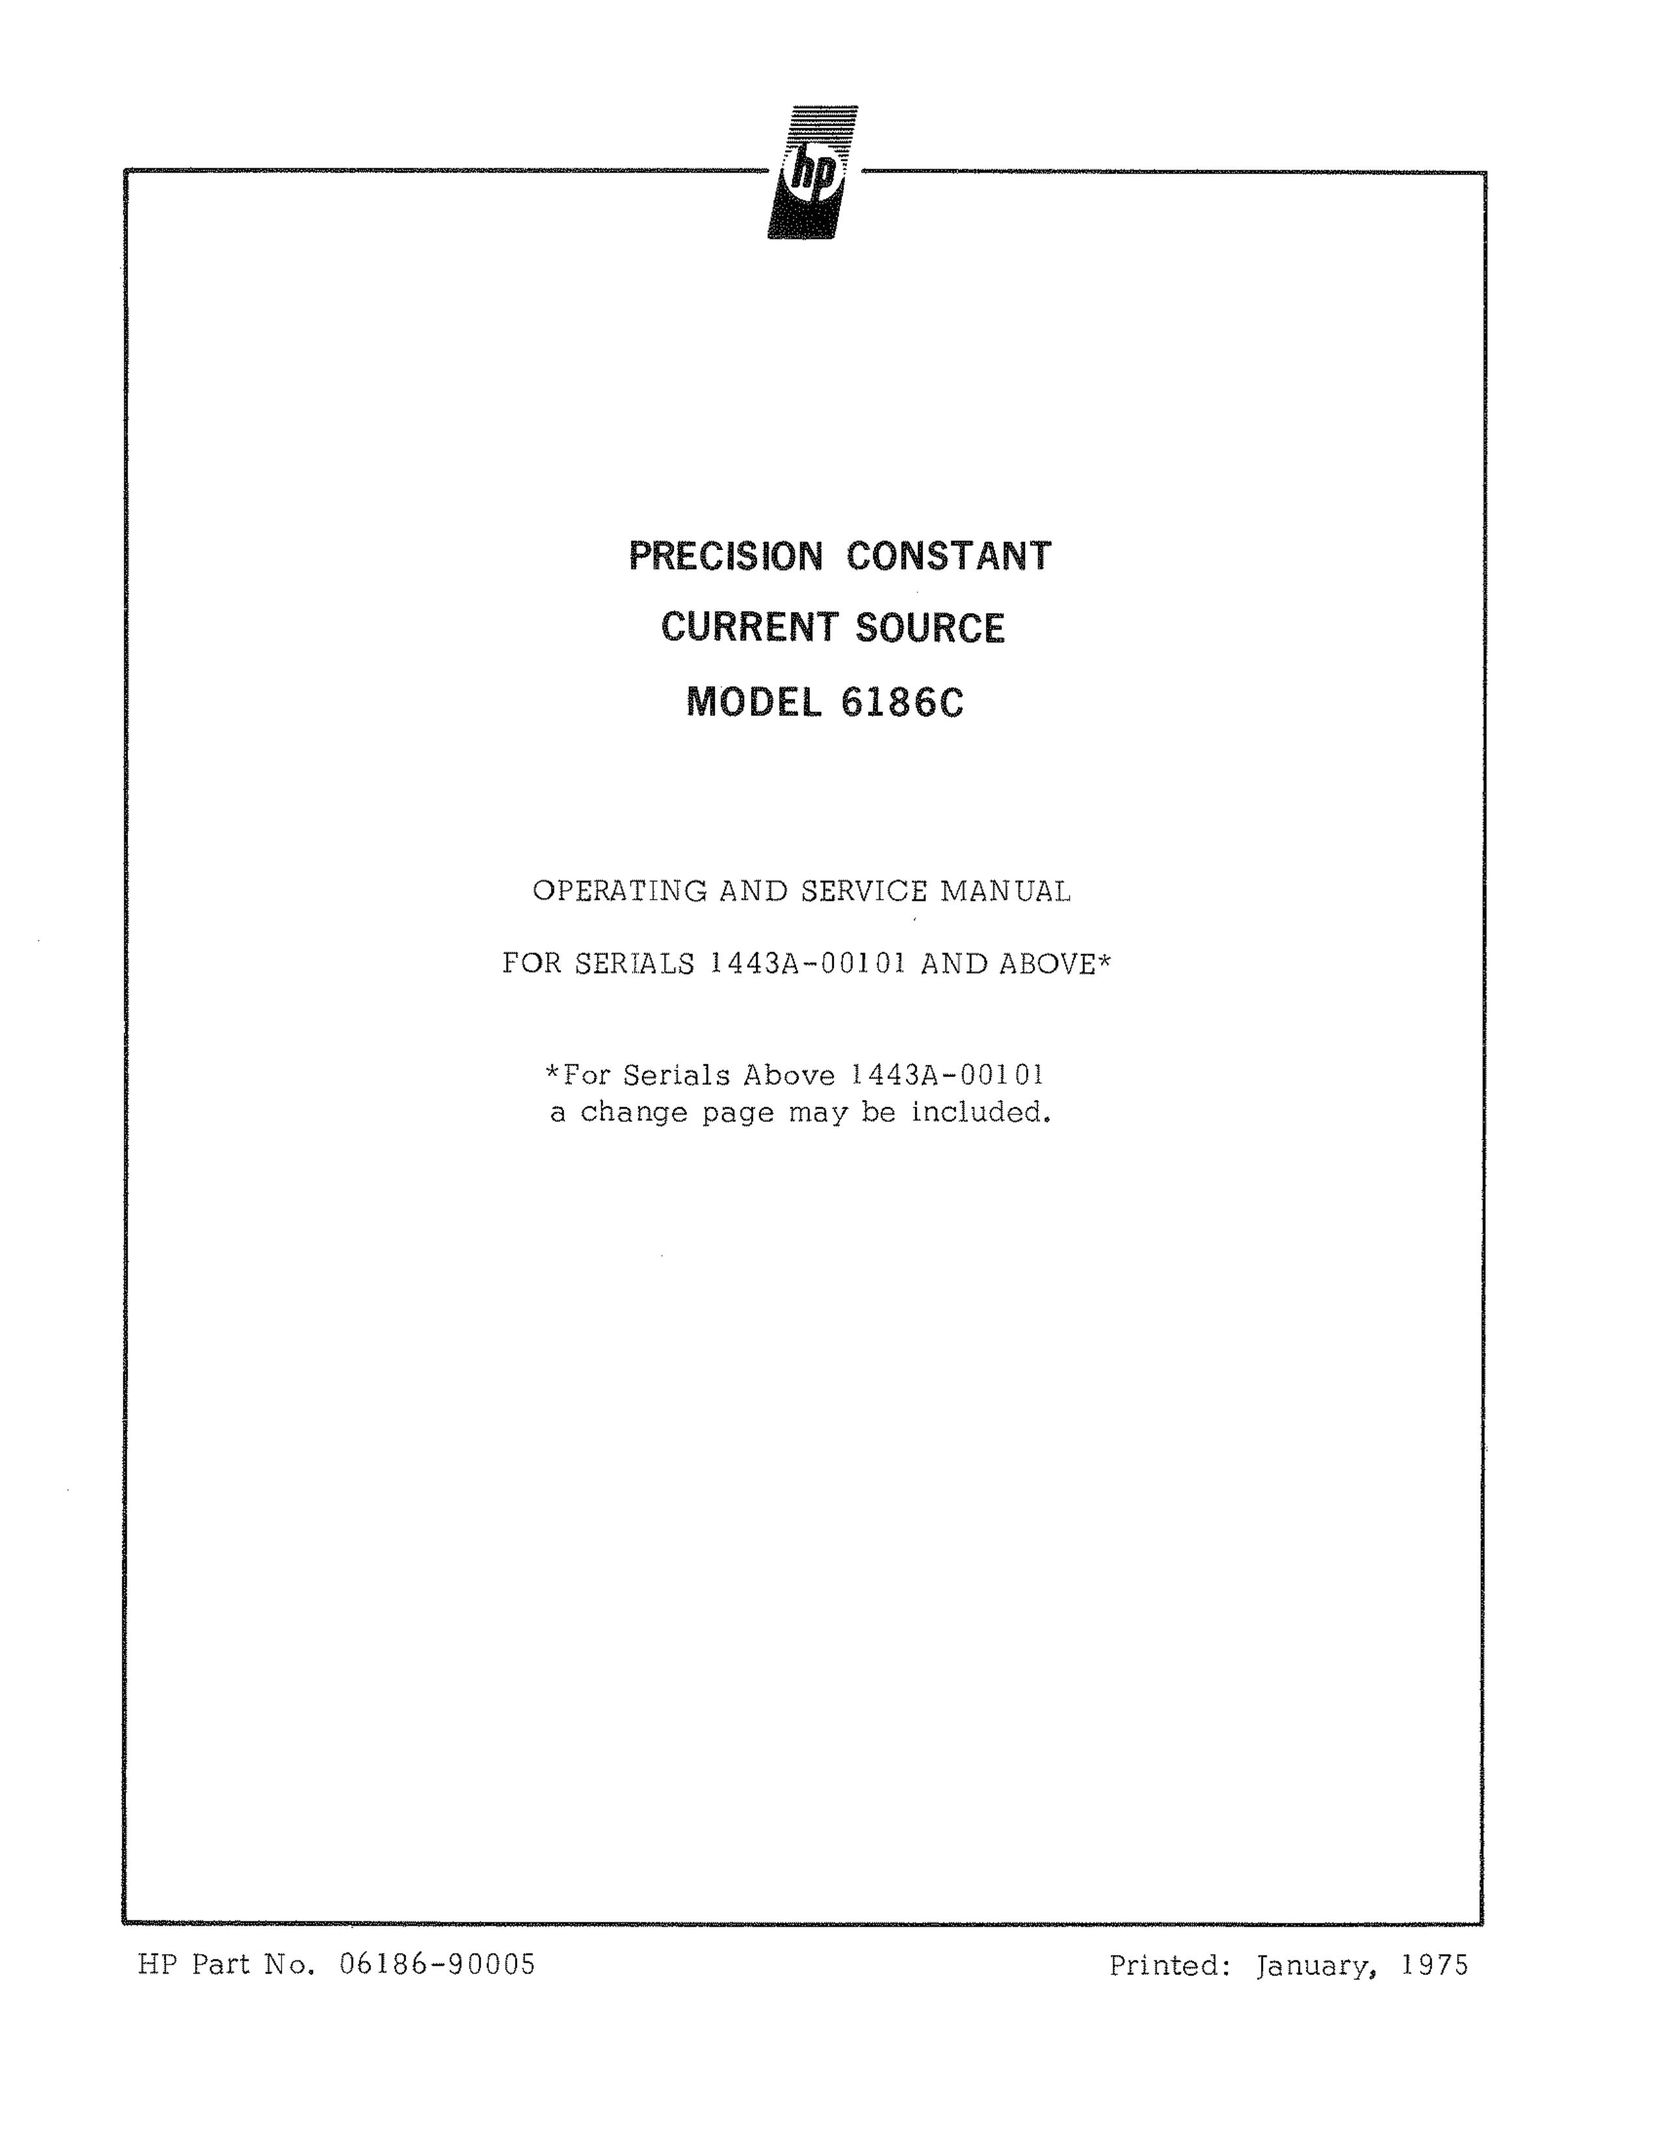 HP (Hewlett-Packard) 6186C Personal Computer User Manual